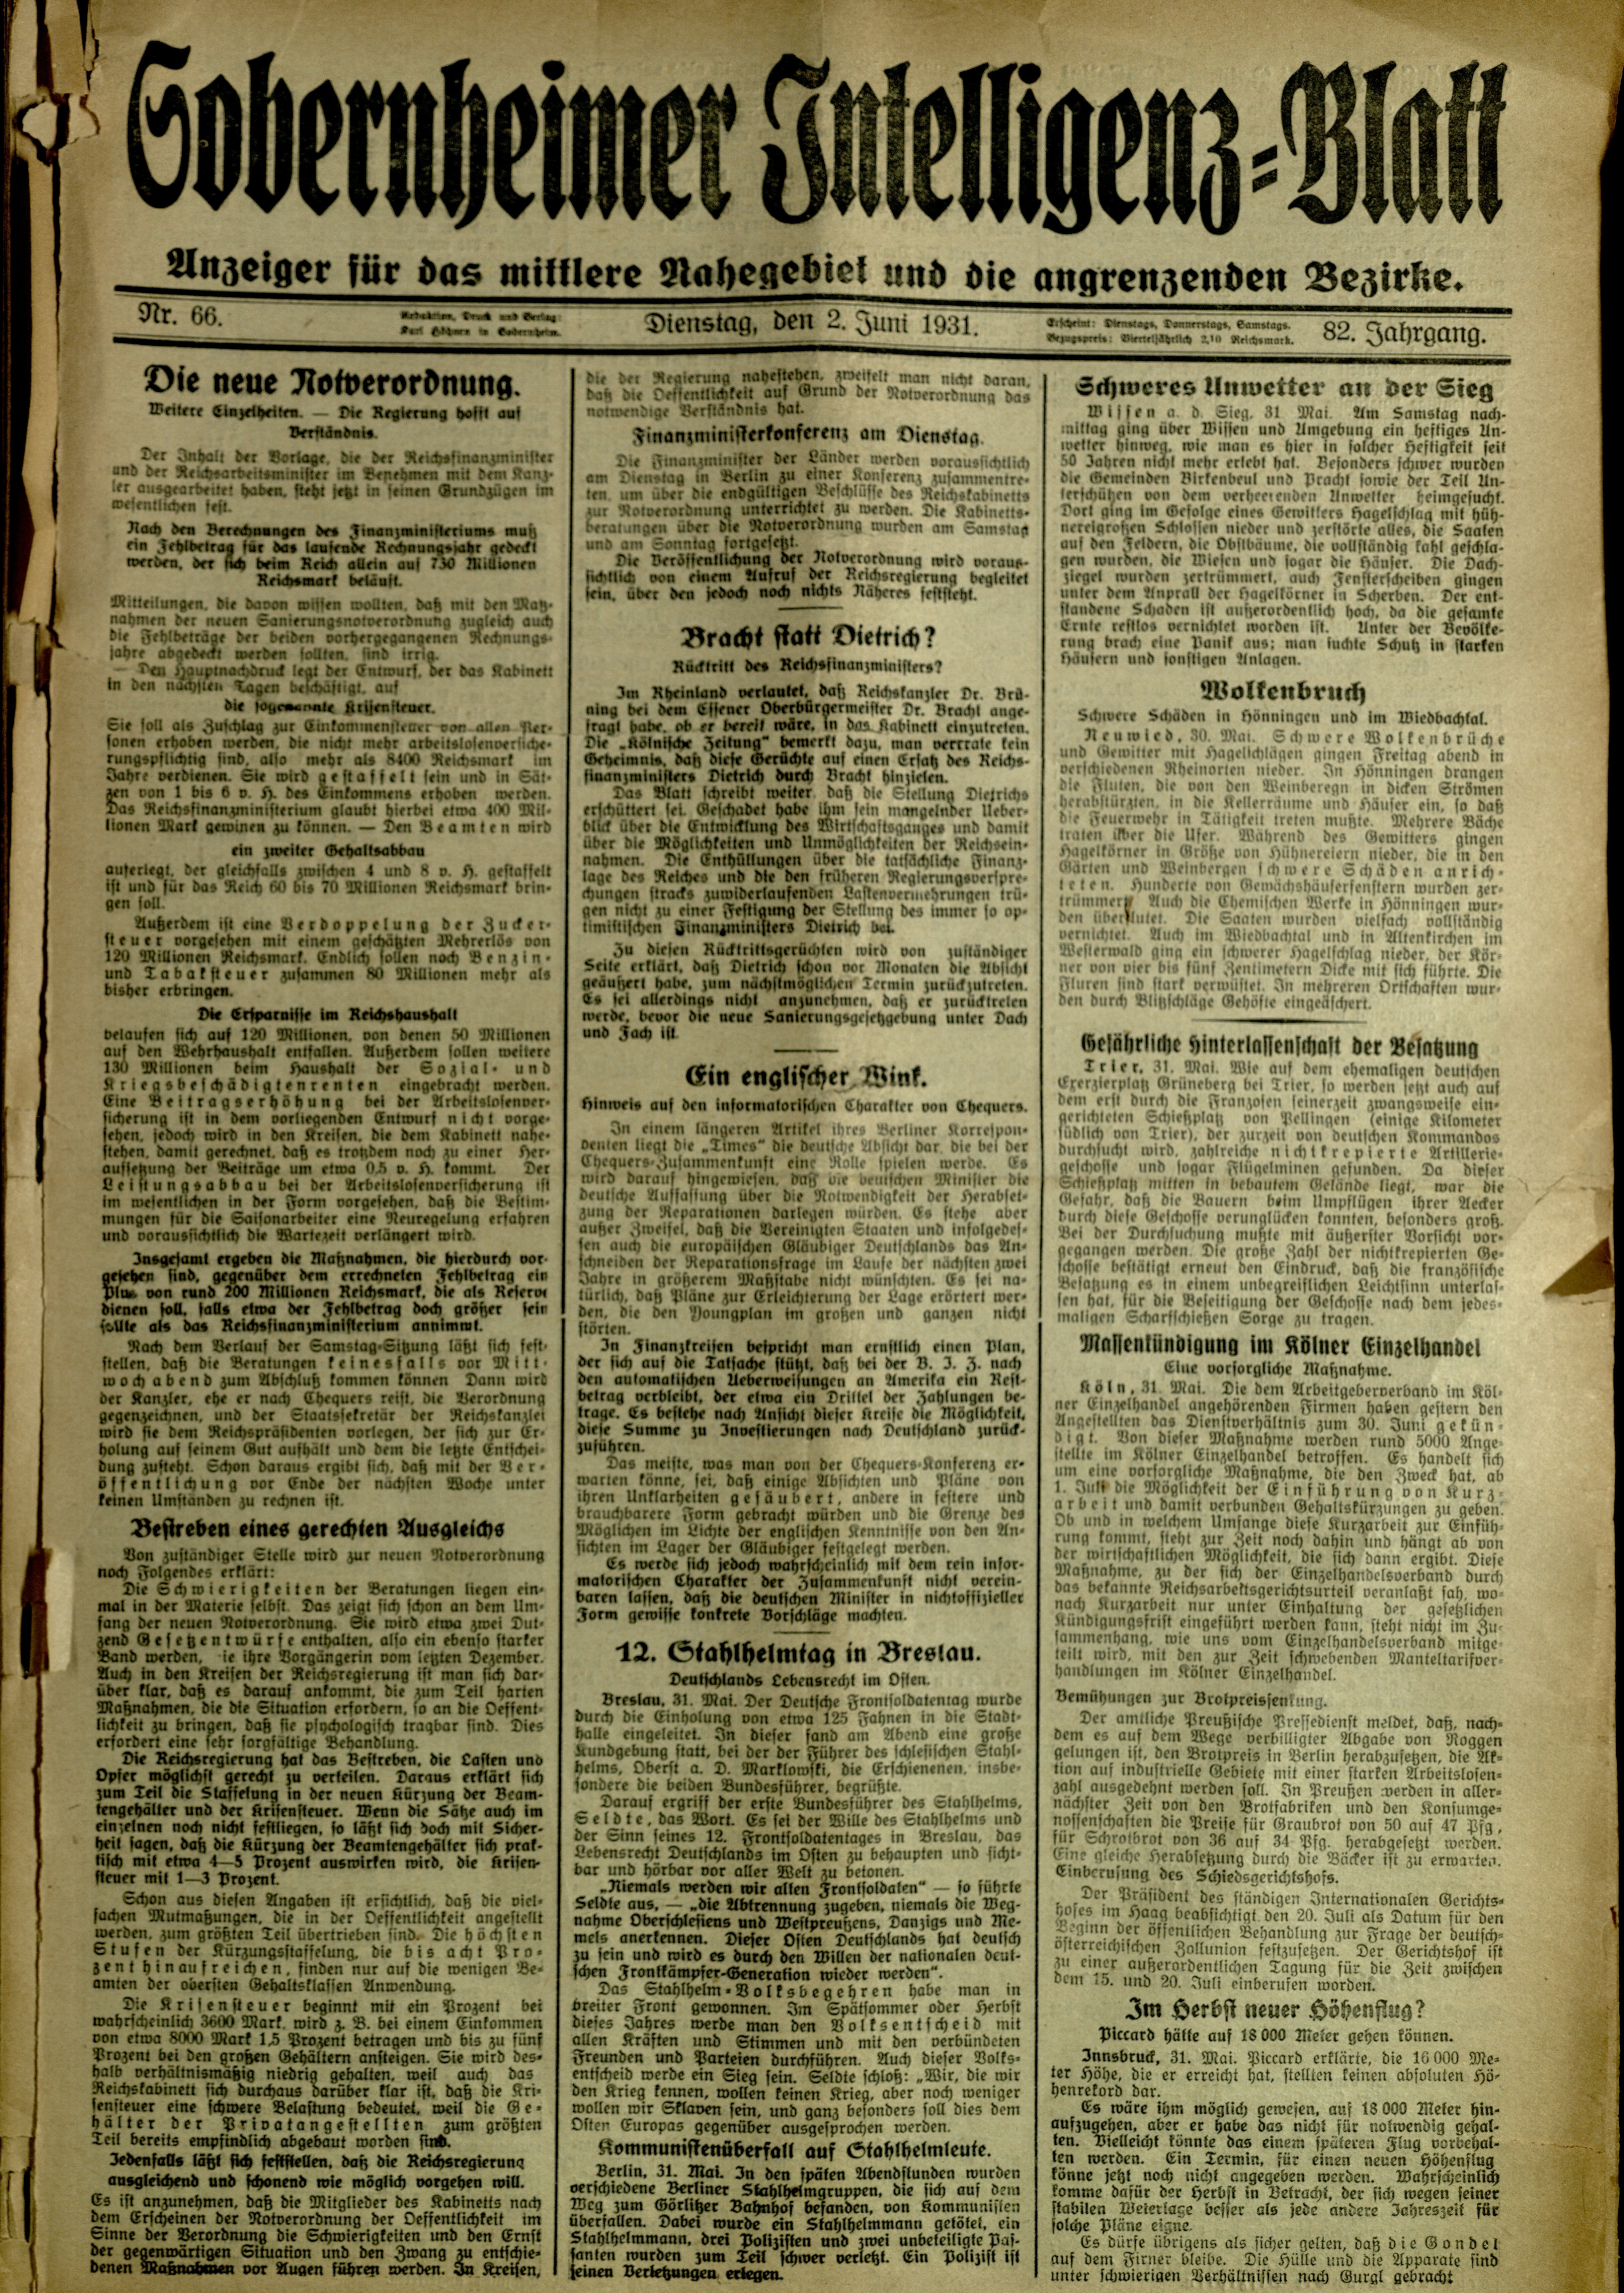 Zeitung: Sobernheimer Intelligenzblatt; Juni 1931, Jg. 79 Nr. 66 (Heimatmuseum Bad Sobernheim CC BY-NC-SA)